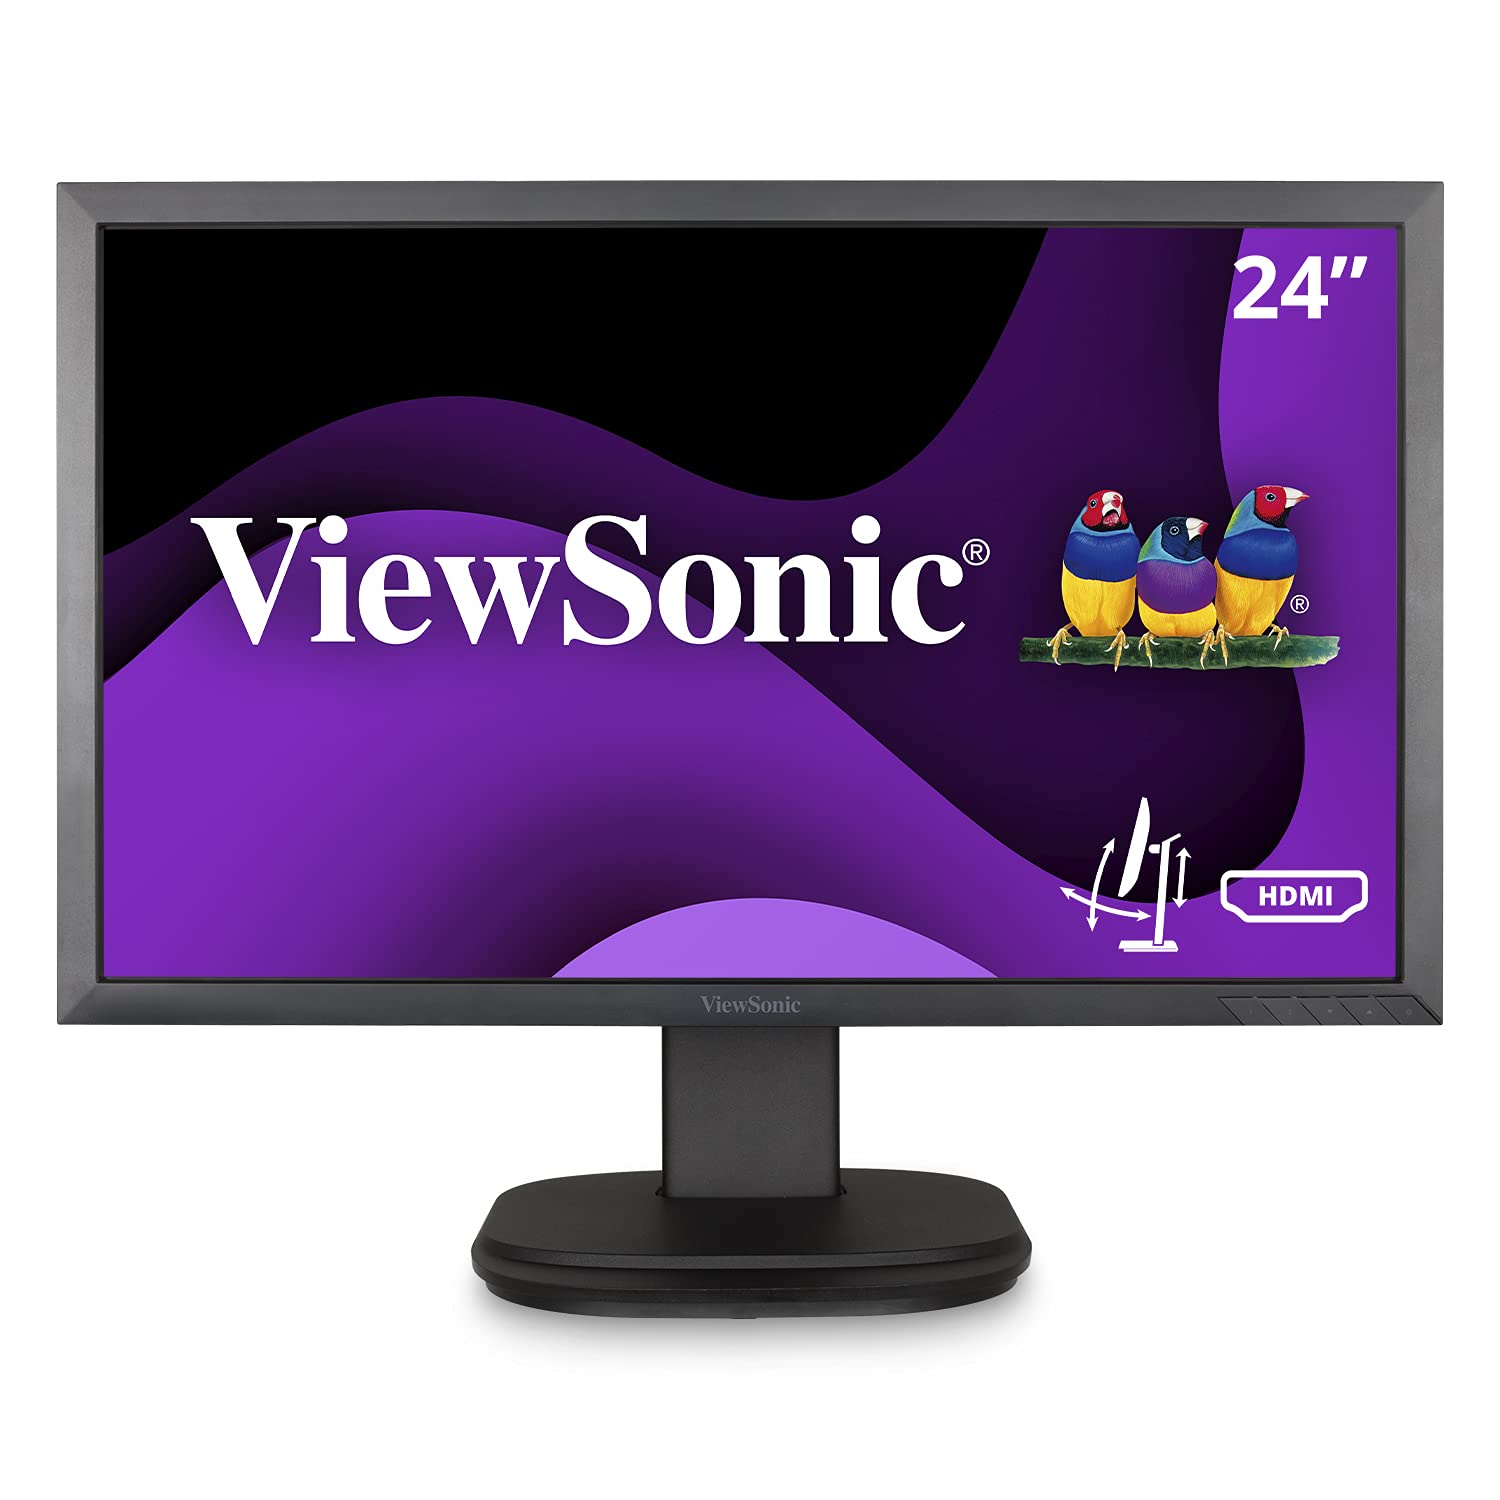 Viewsonic VG2439SMH 24 Inch 1080p Ergonomic Monitor wit...